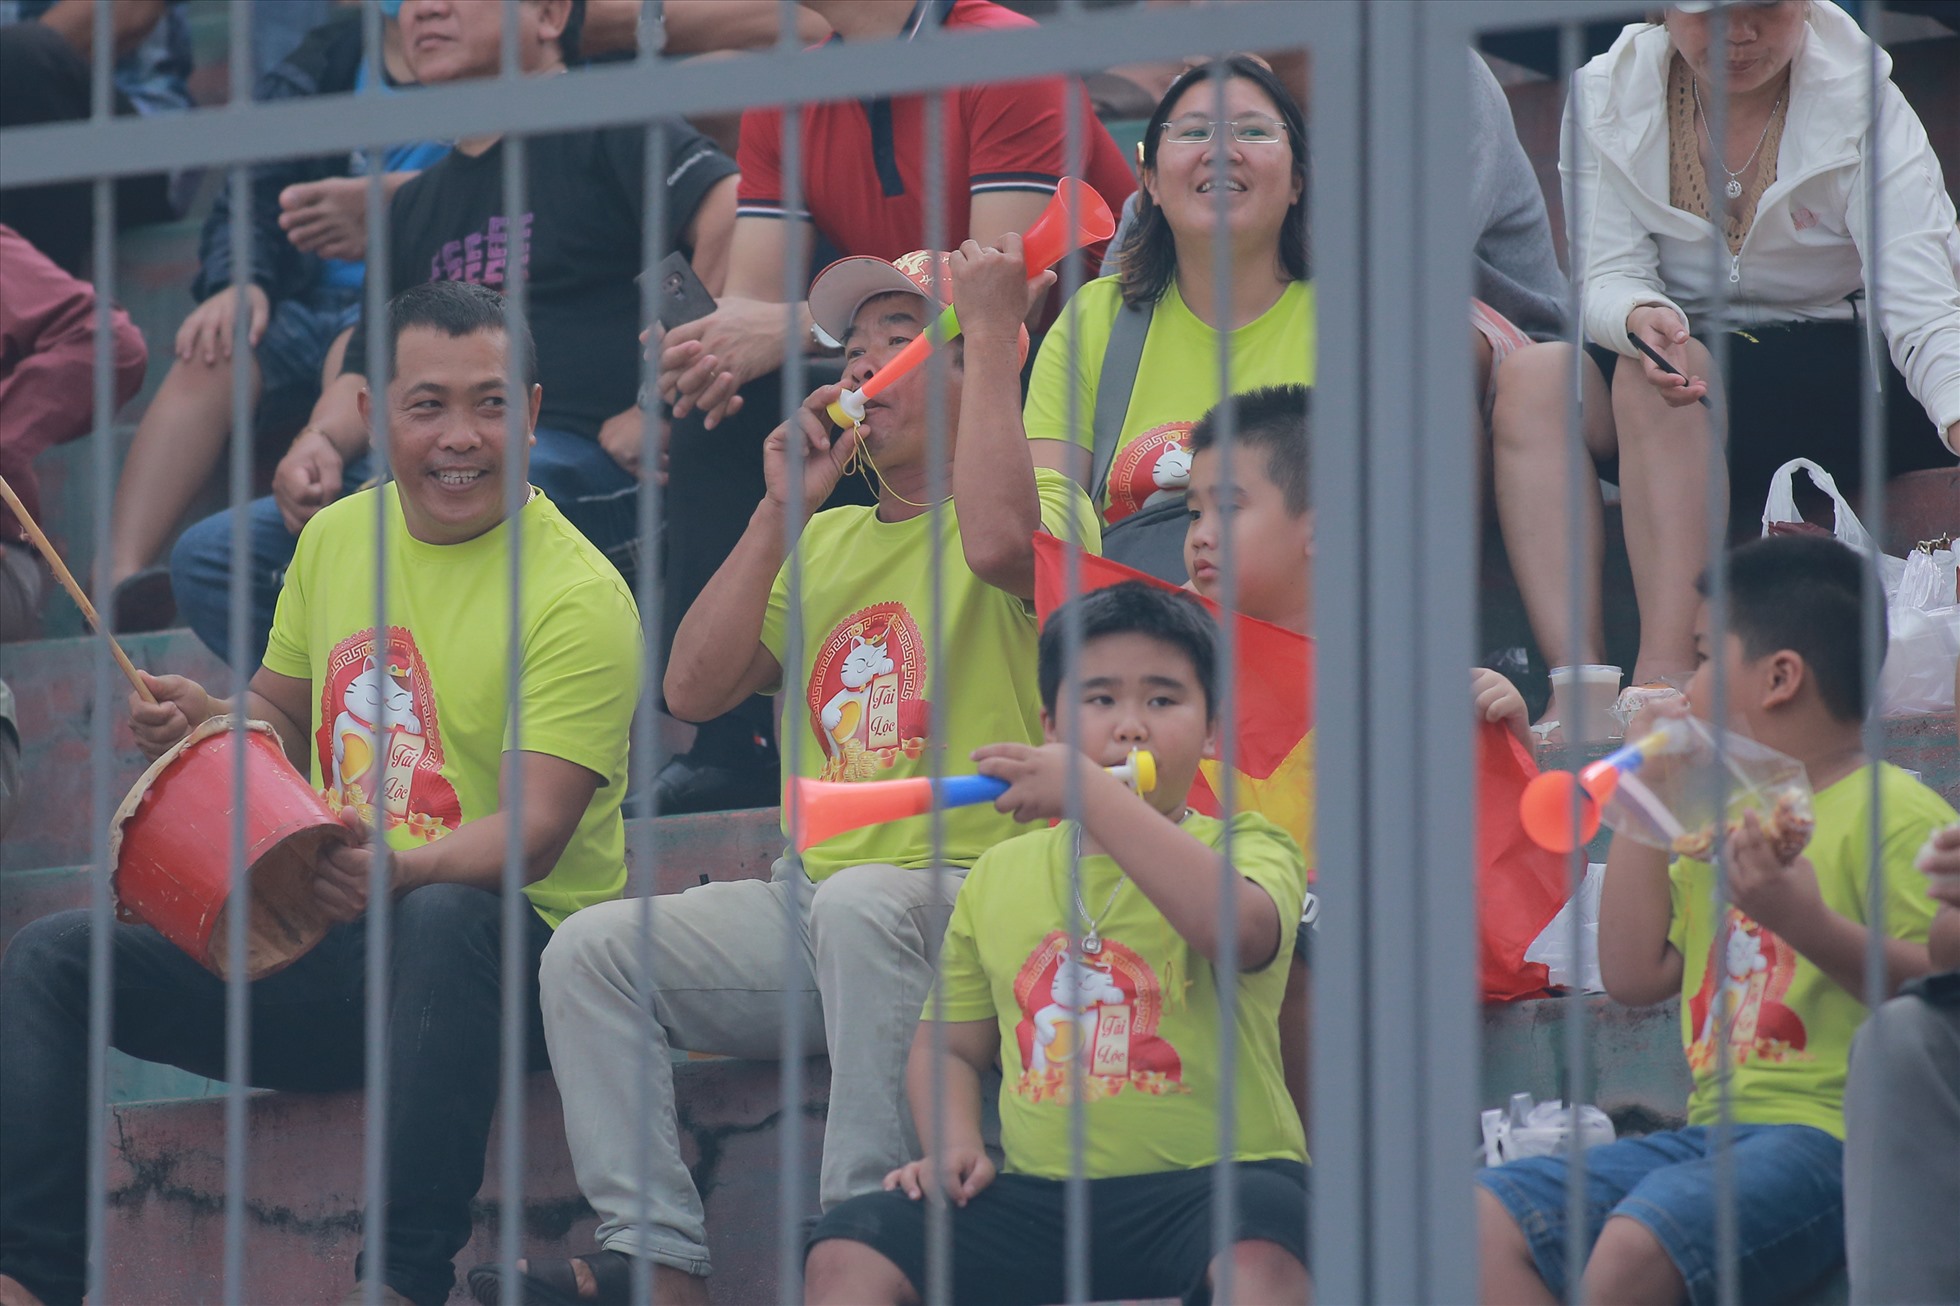 Hàng vạn khán giả trên sân 19 tháng 8 Nha Trang liên tục hò reo cổ vũ các cầu thủ Khánh Hòa mỗi khi họ có bóng và triển khai tấn công.